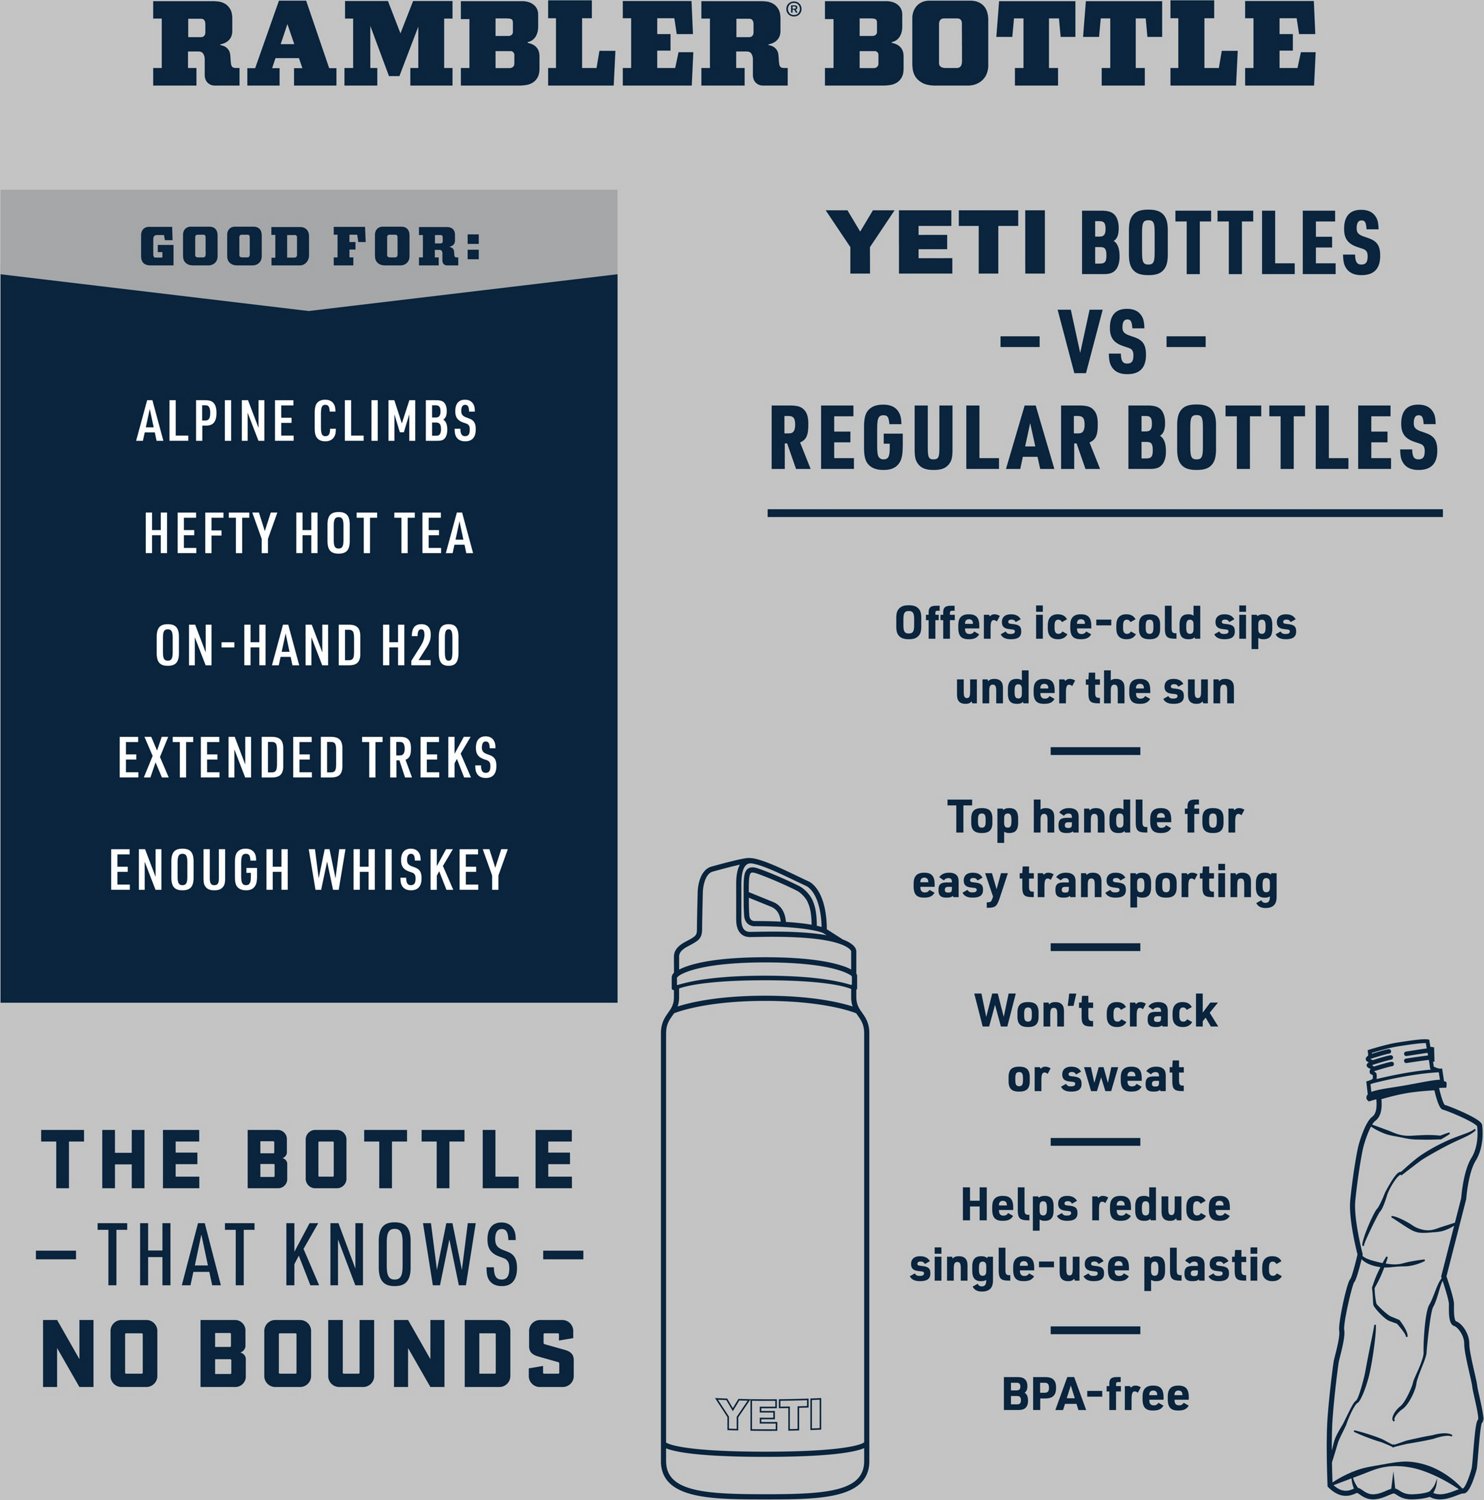 YETI Rambler 18 oz Bottle with Chug Cap